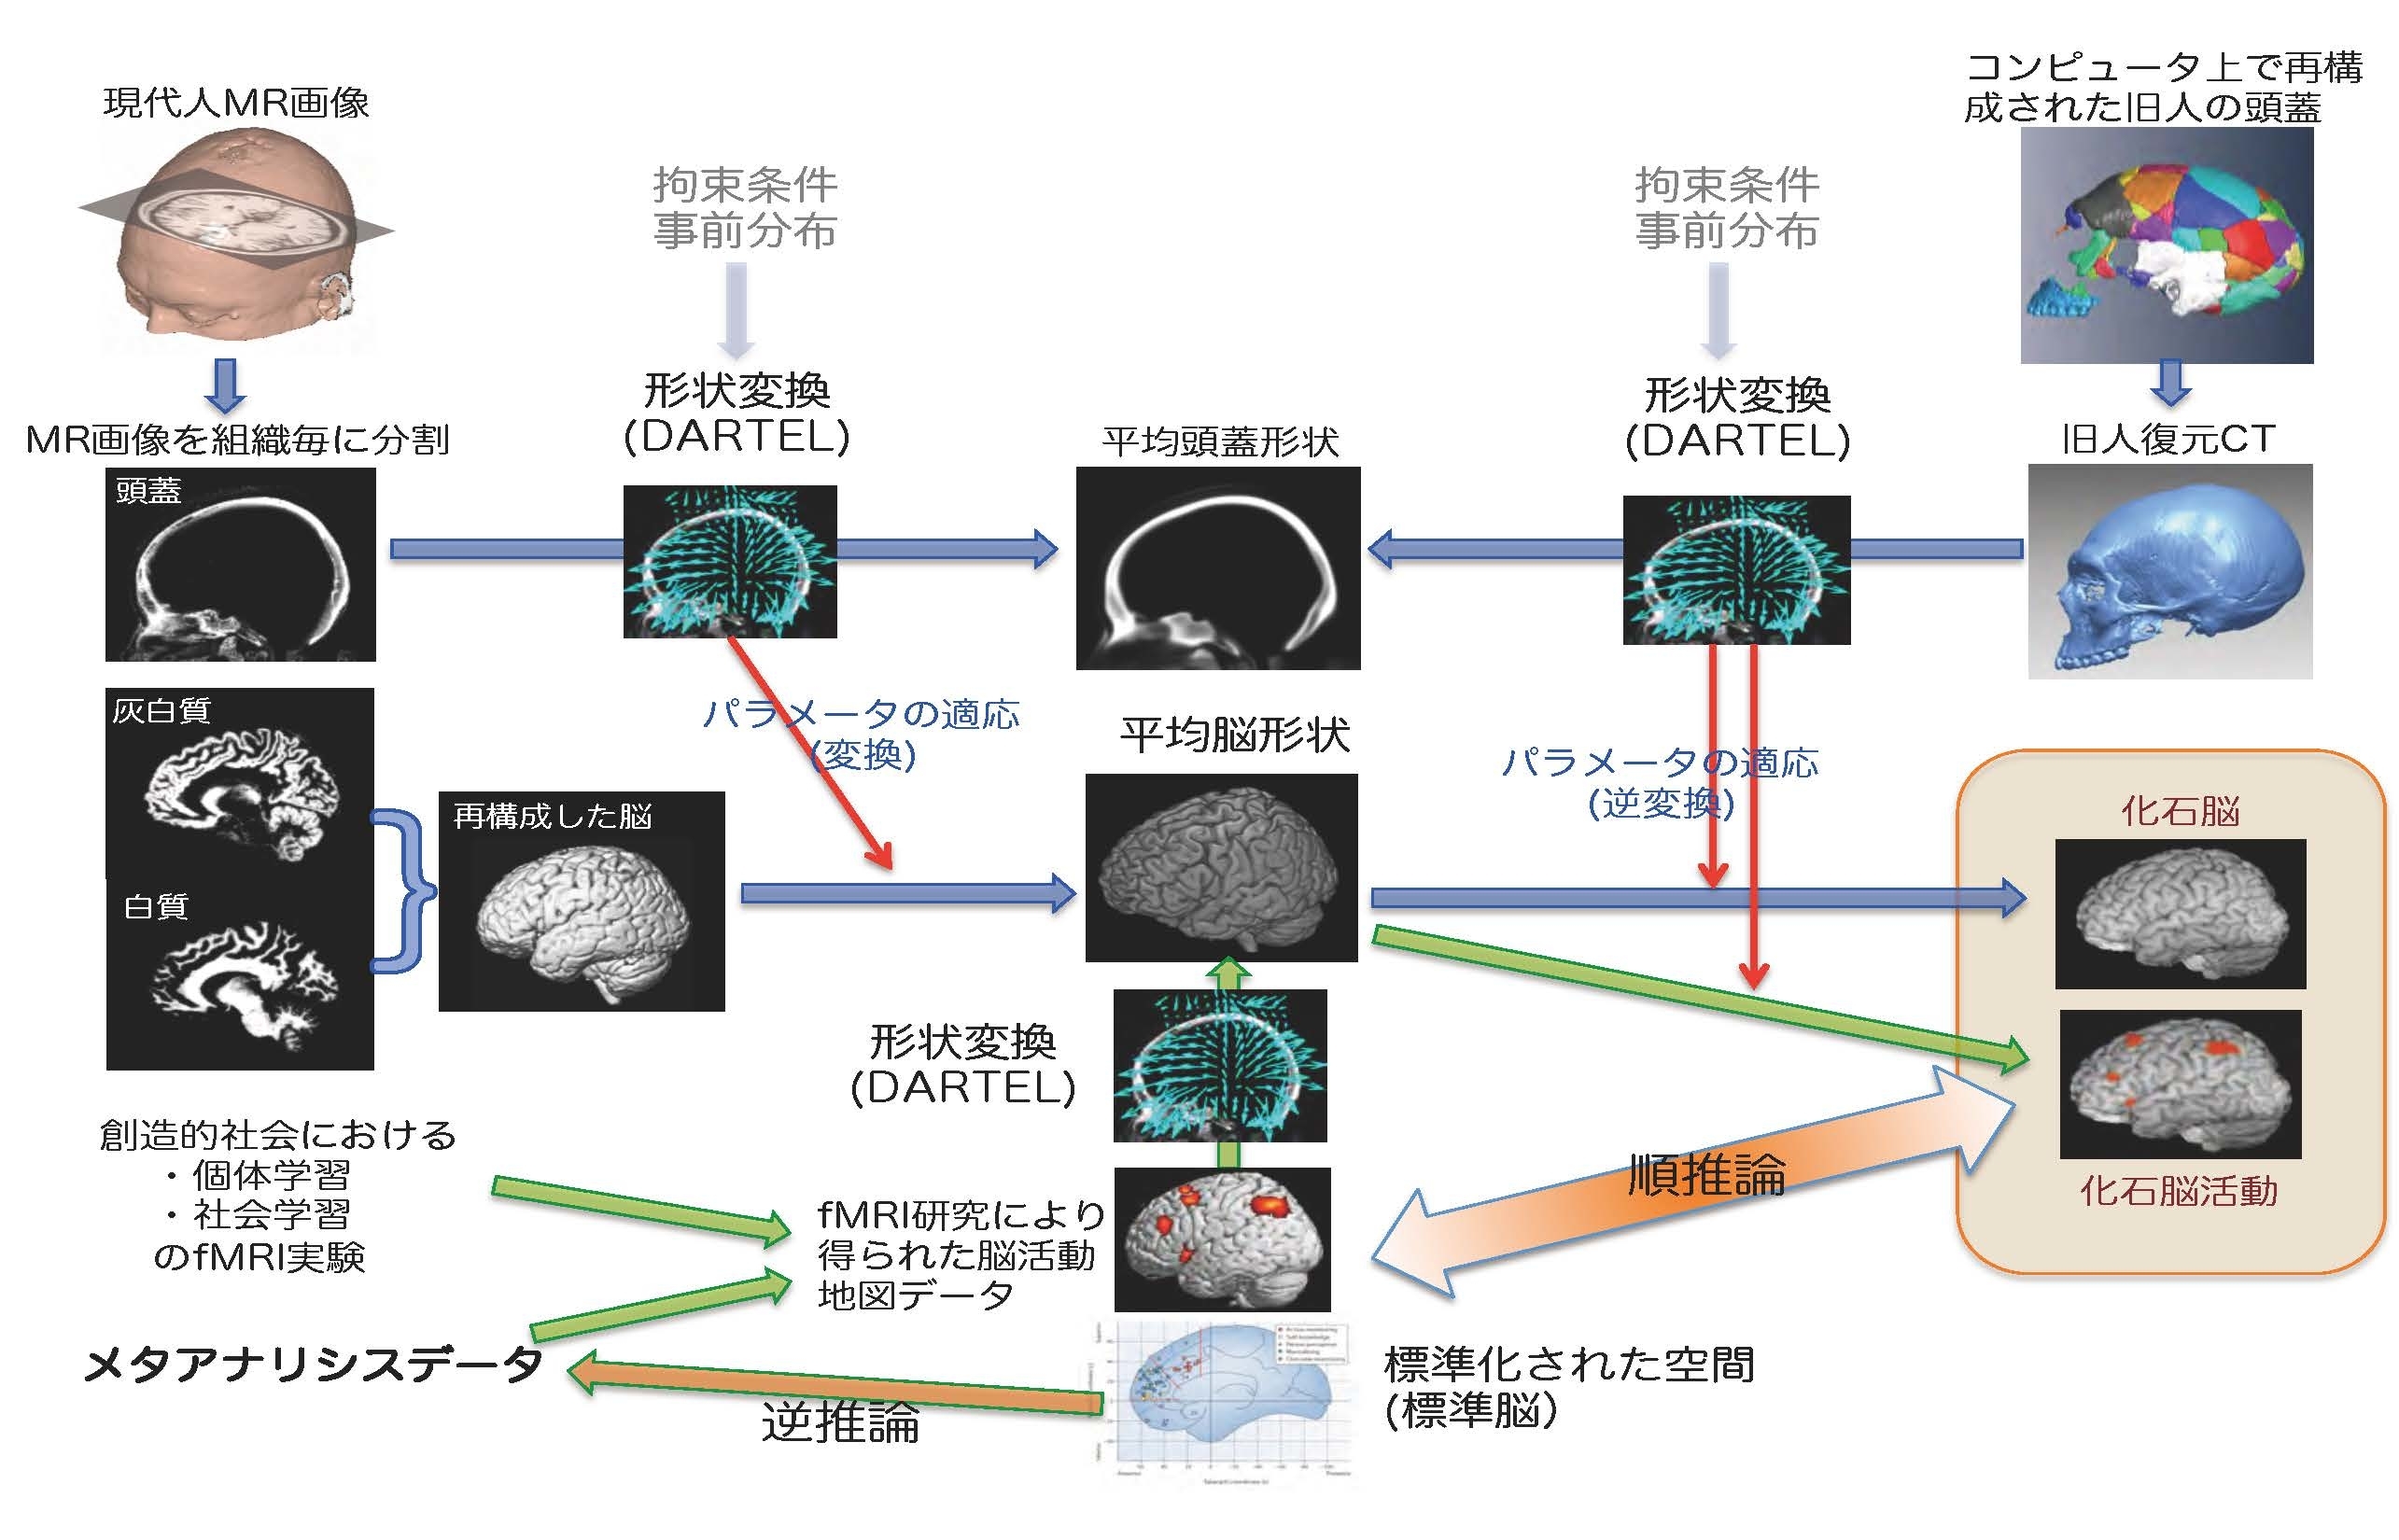 情報学研究科 名古屋大学 脳とこころの研究センター